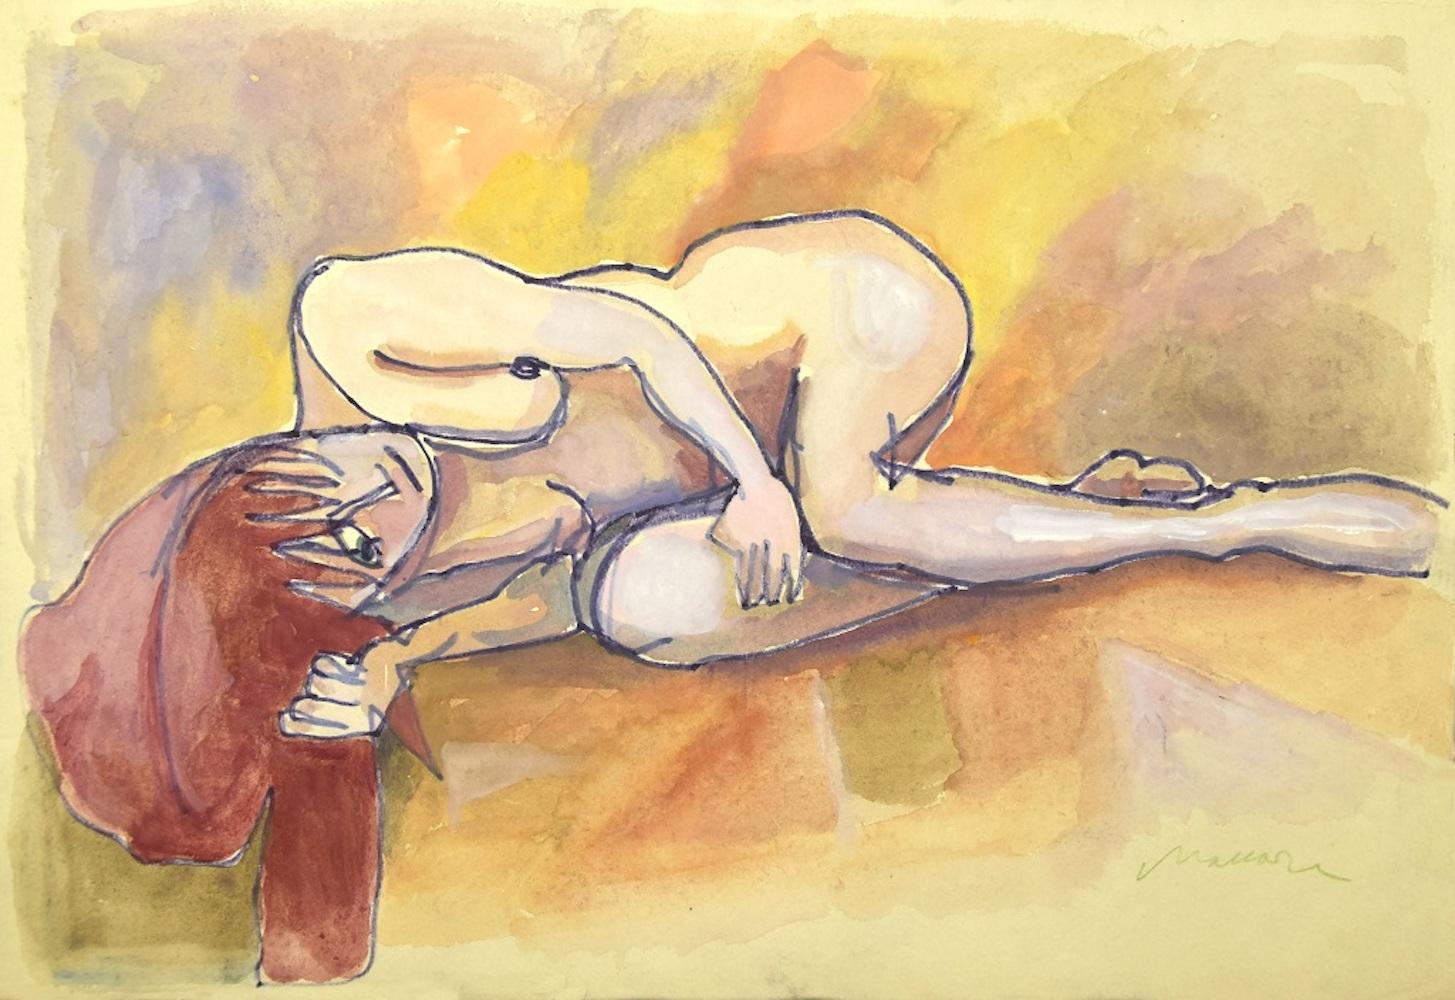 Le nu couché est une œuvre d'art originale réalisée par Mino Maccari dans les années 1960.

Dessin coloré en techniques mixtes (encre et aquarelle) sur papier. 

Signé à la main au crayon par l'artiste dans la marge inférieure. 

Bonnes conditions à